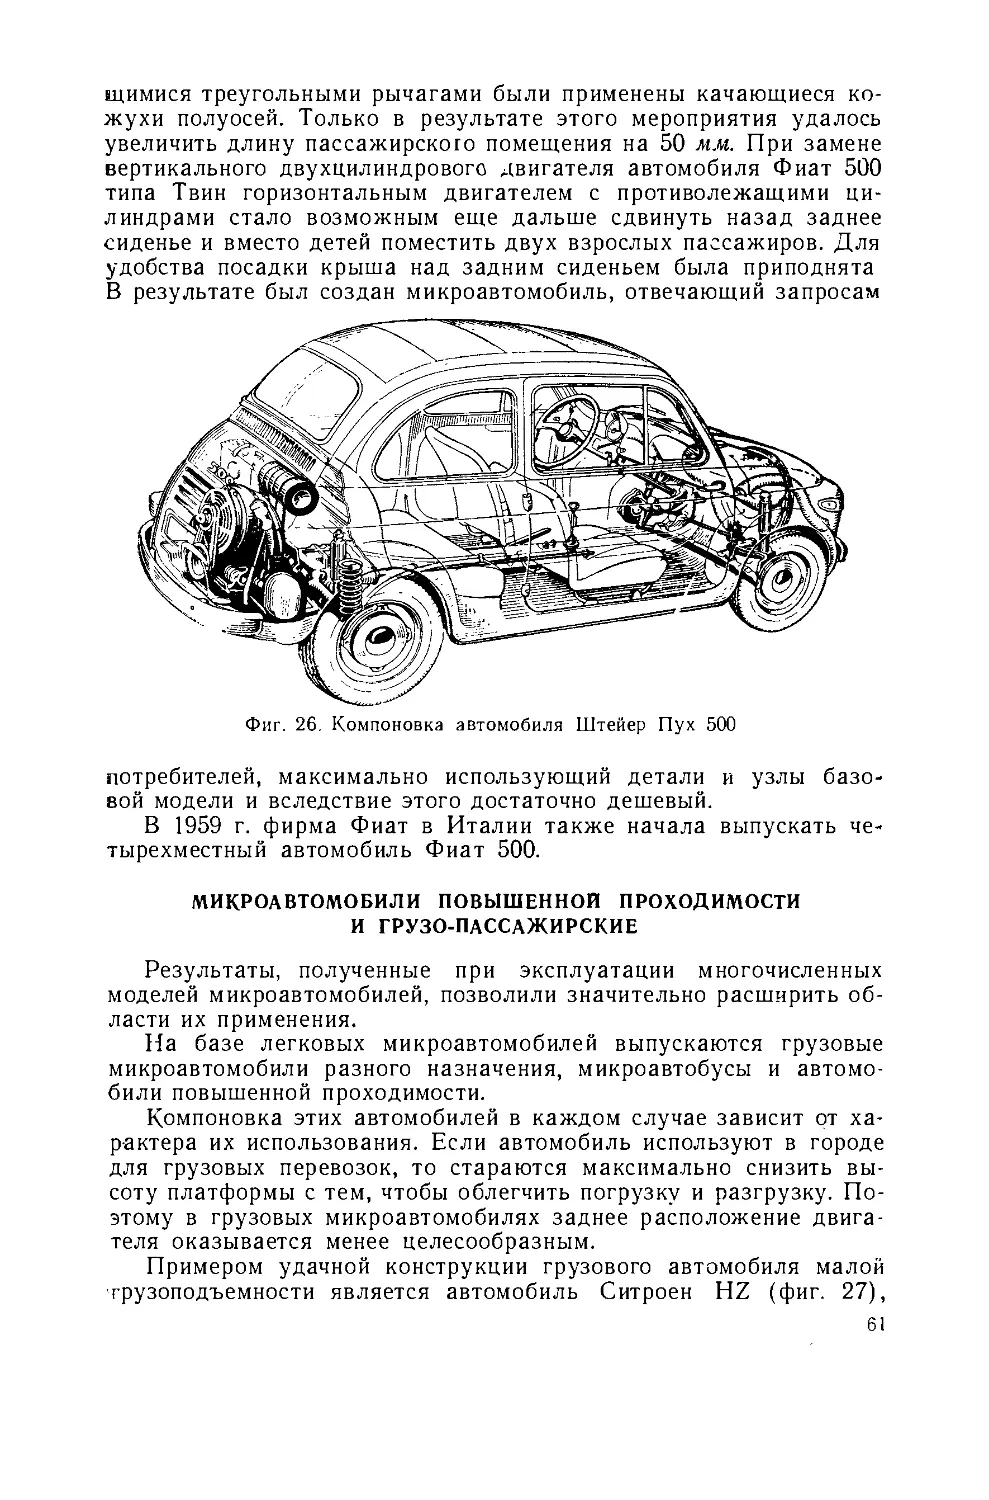 ﻿Микроавтомобили повышенной проходимости и грузо-пассажирски